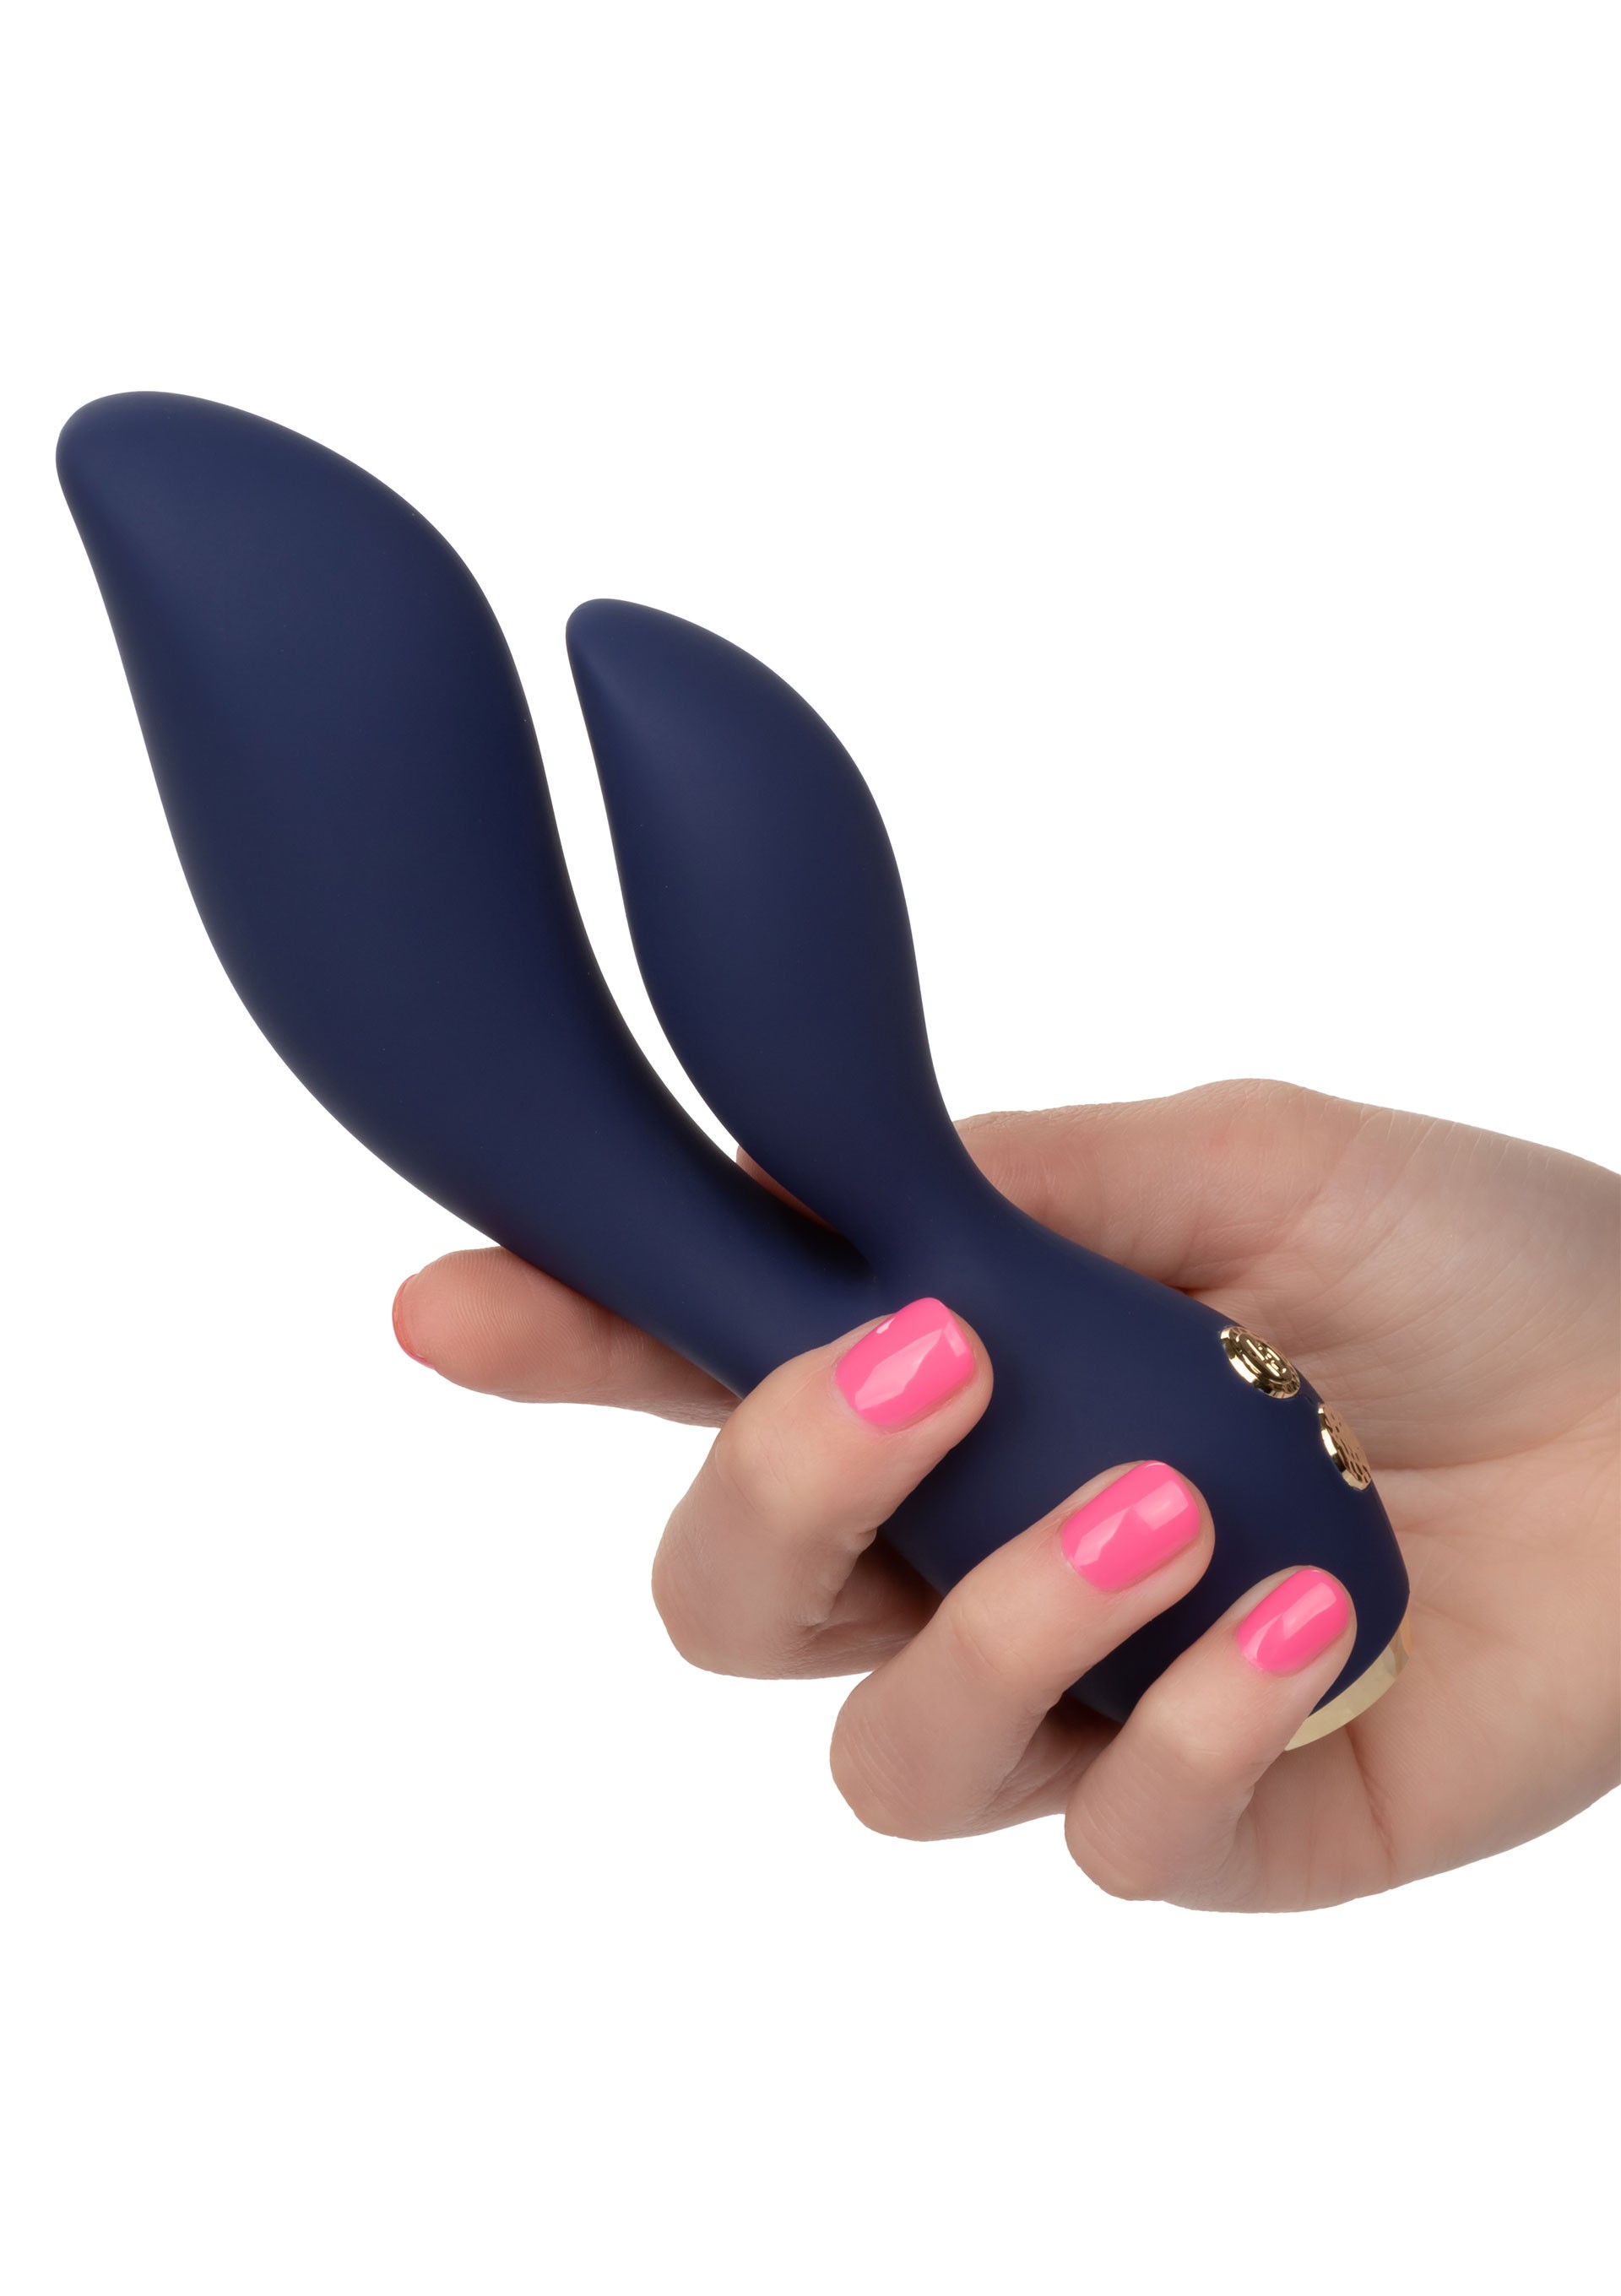 Calexotics Chic Lilac Ultra Güçlü Paylaşımlı Rabbit Vibratör